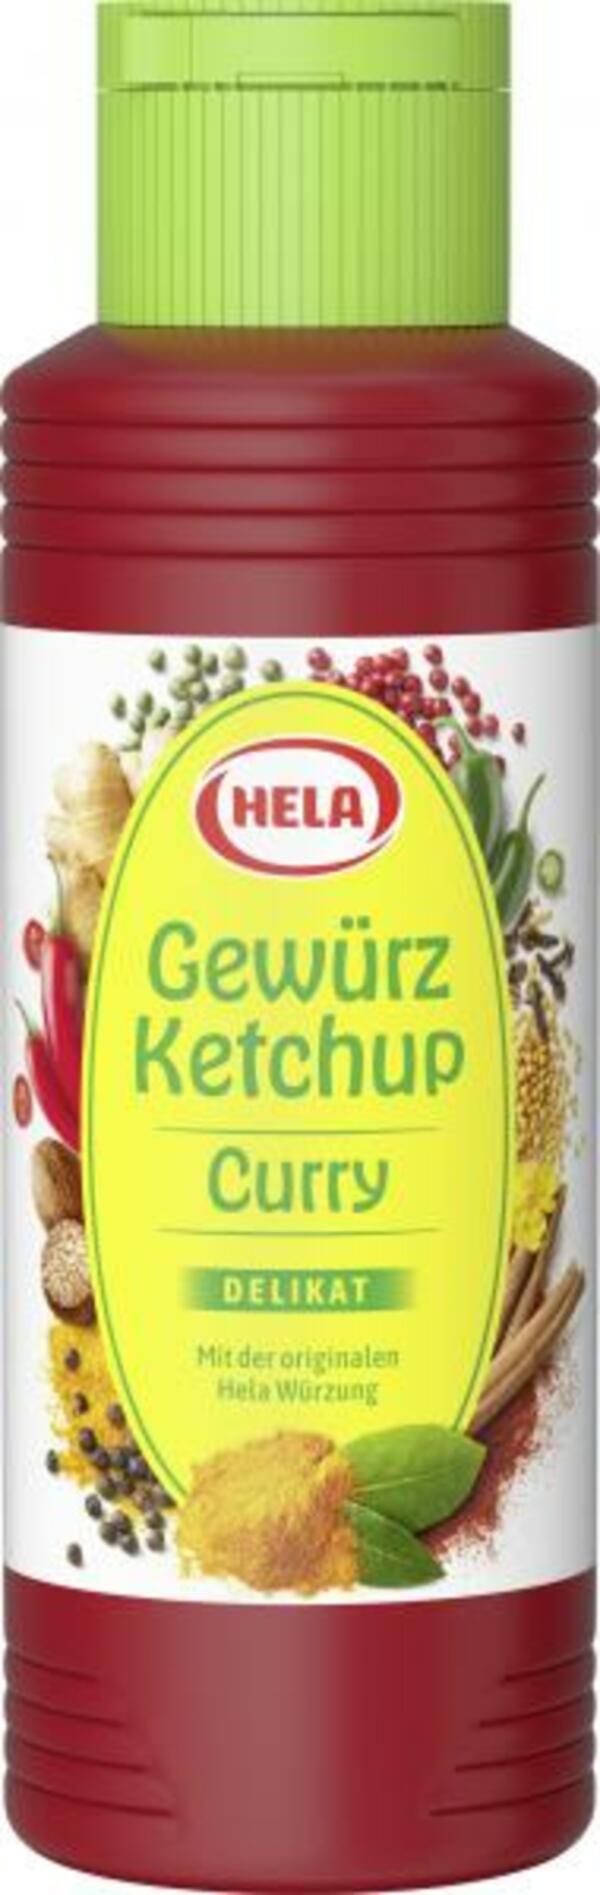 Bild 1 von Hela Gewürz Ketchup Curry delikat